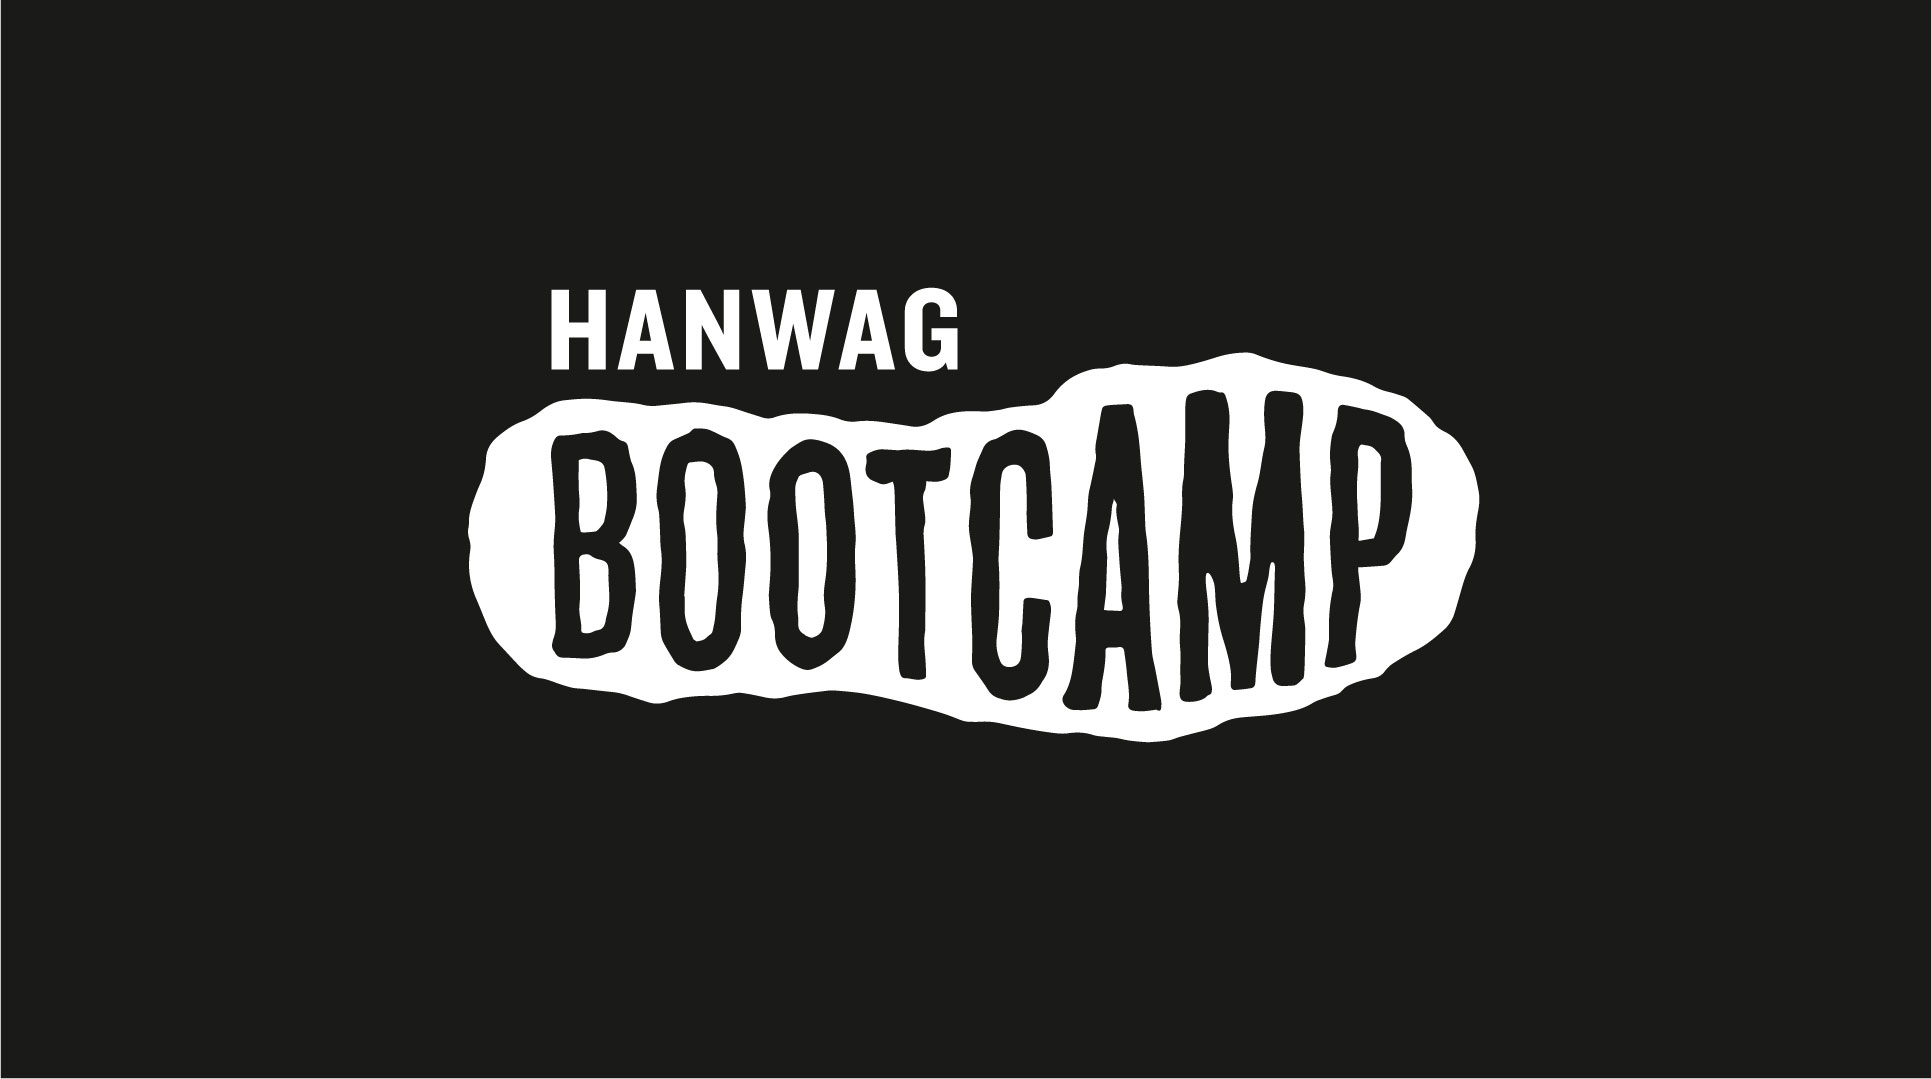 Hanwag Bootcamp Logo